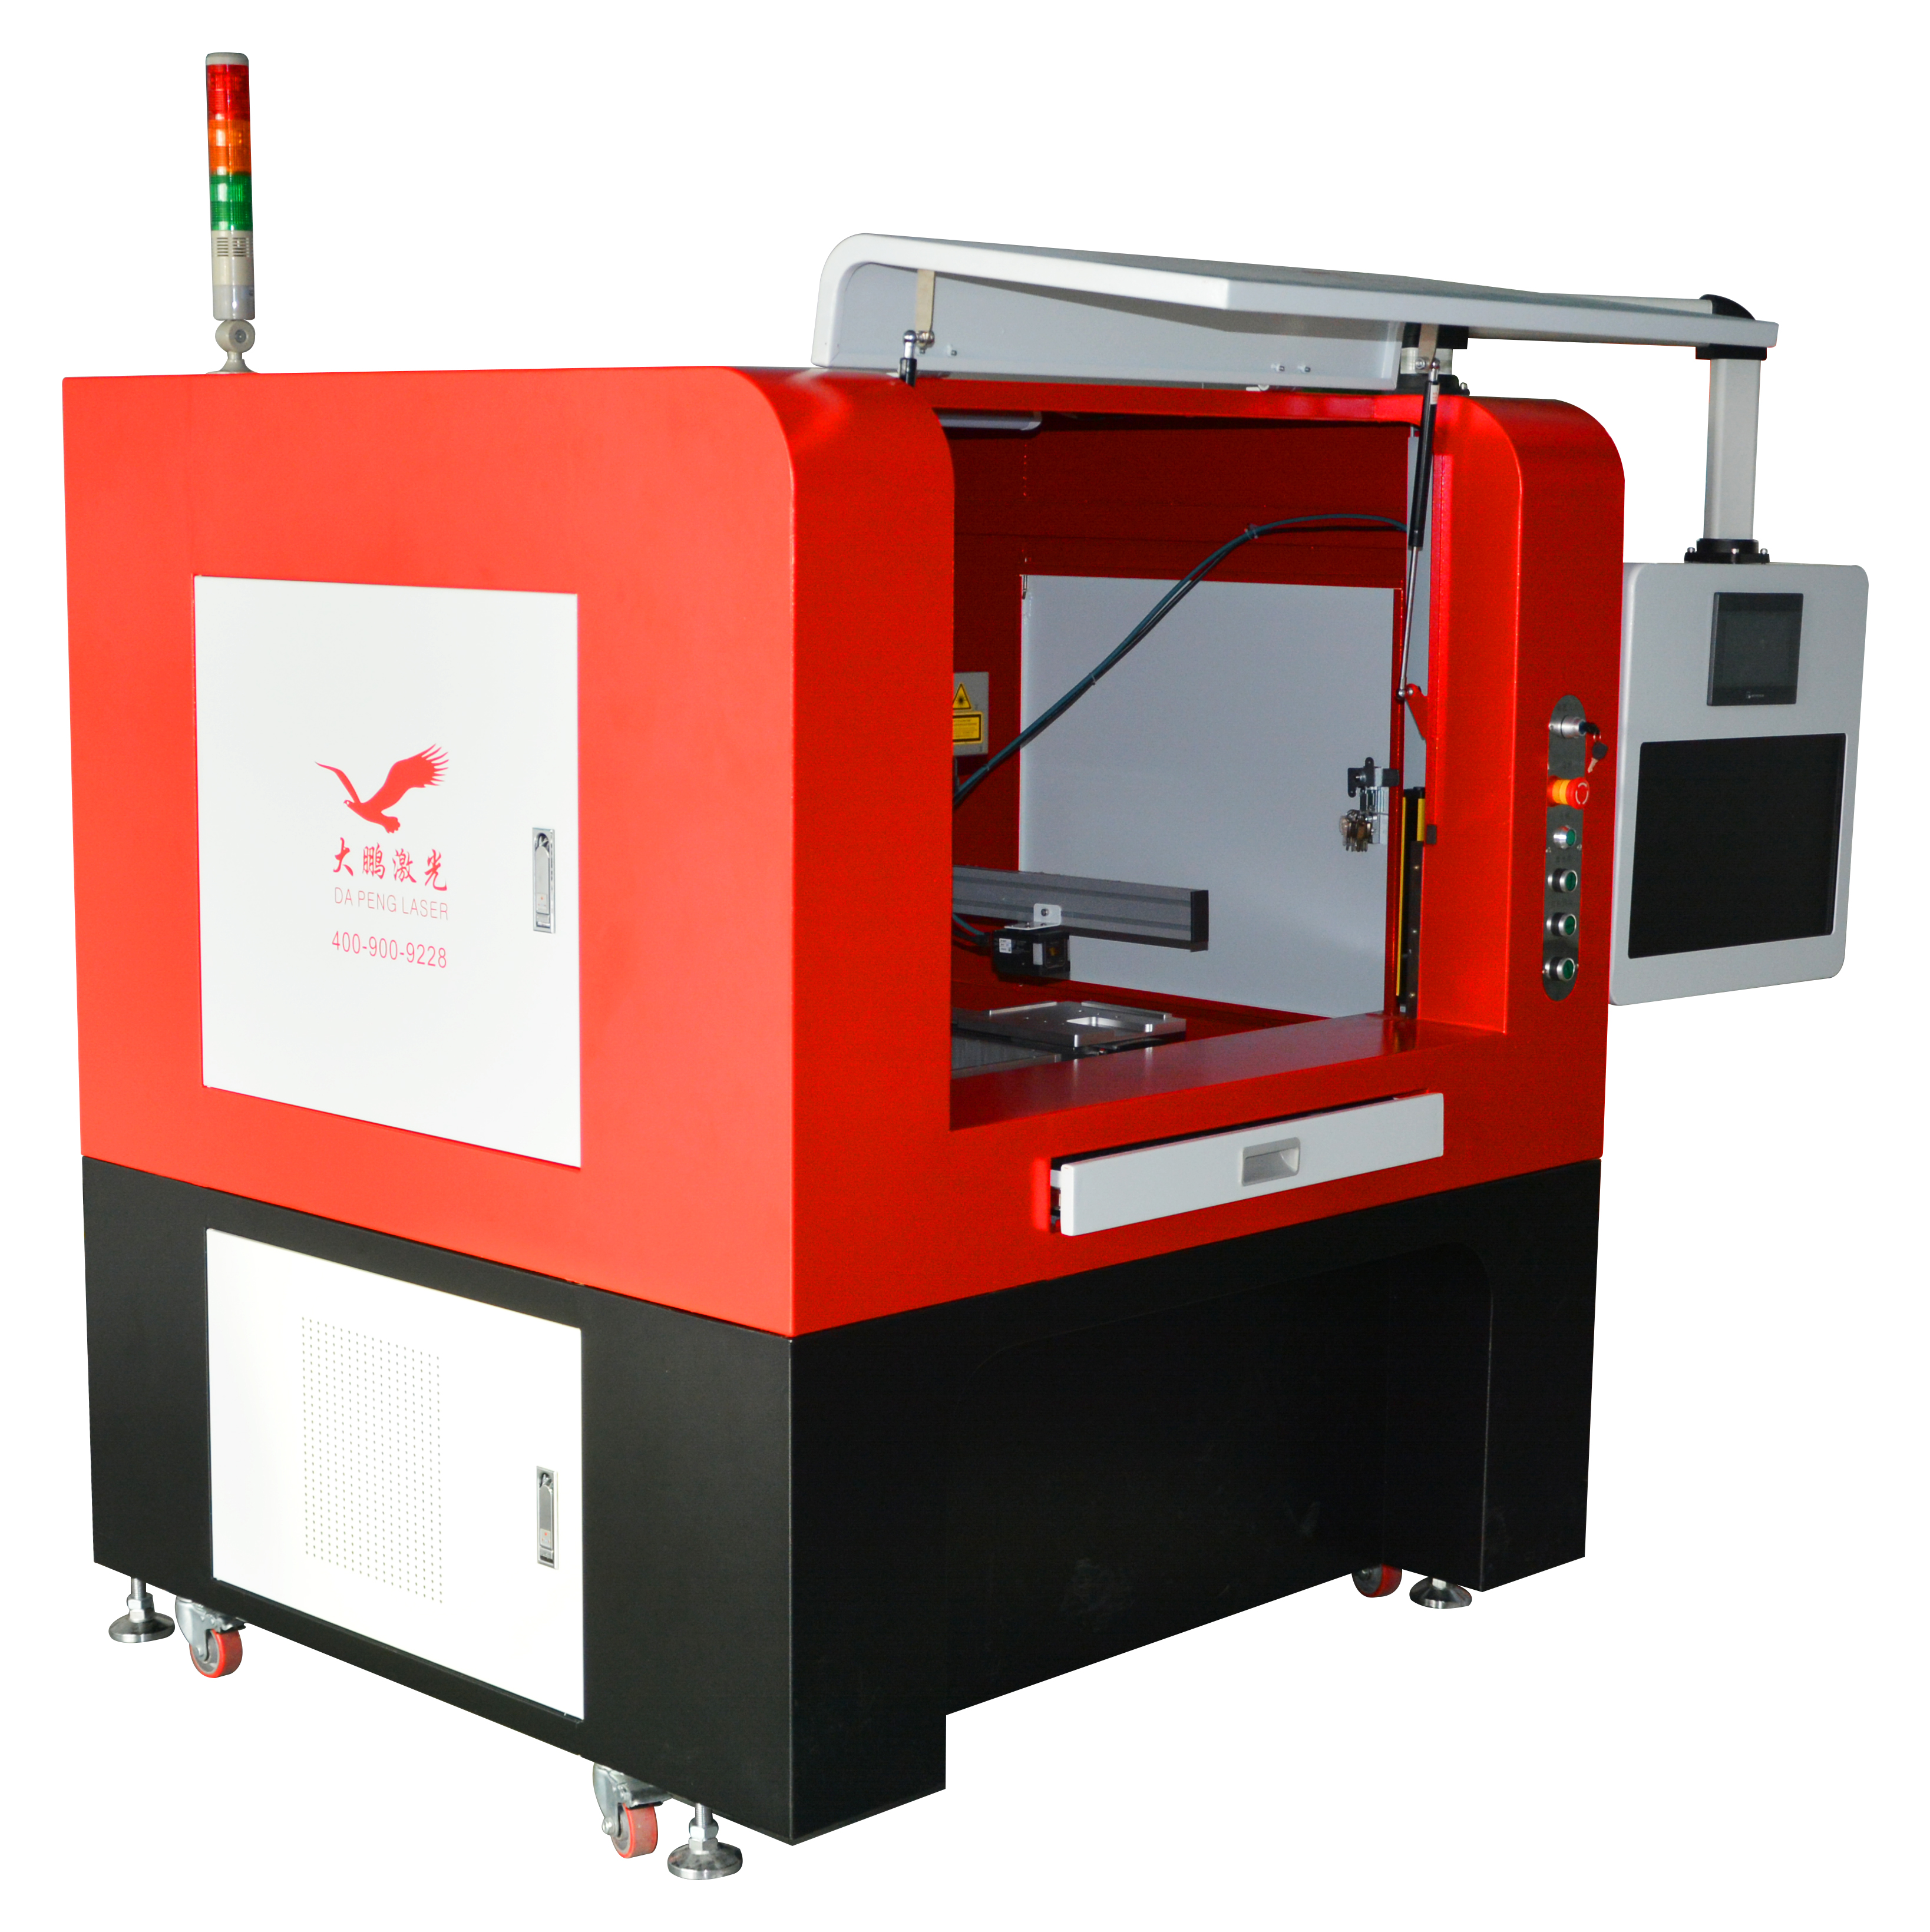 Circuit board (ultraviolet) laser engraving machine